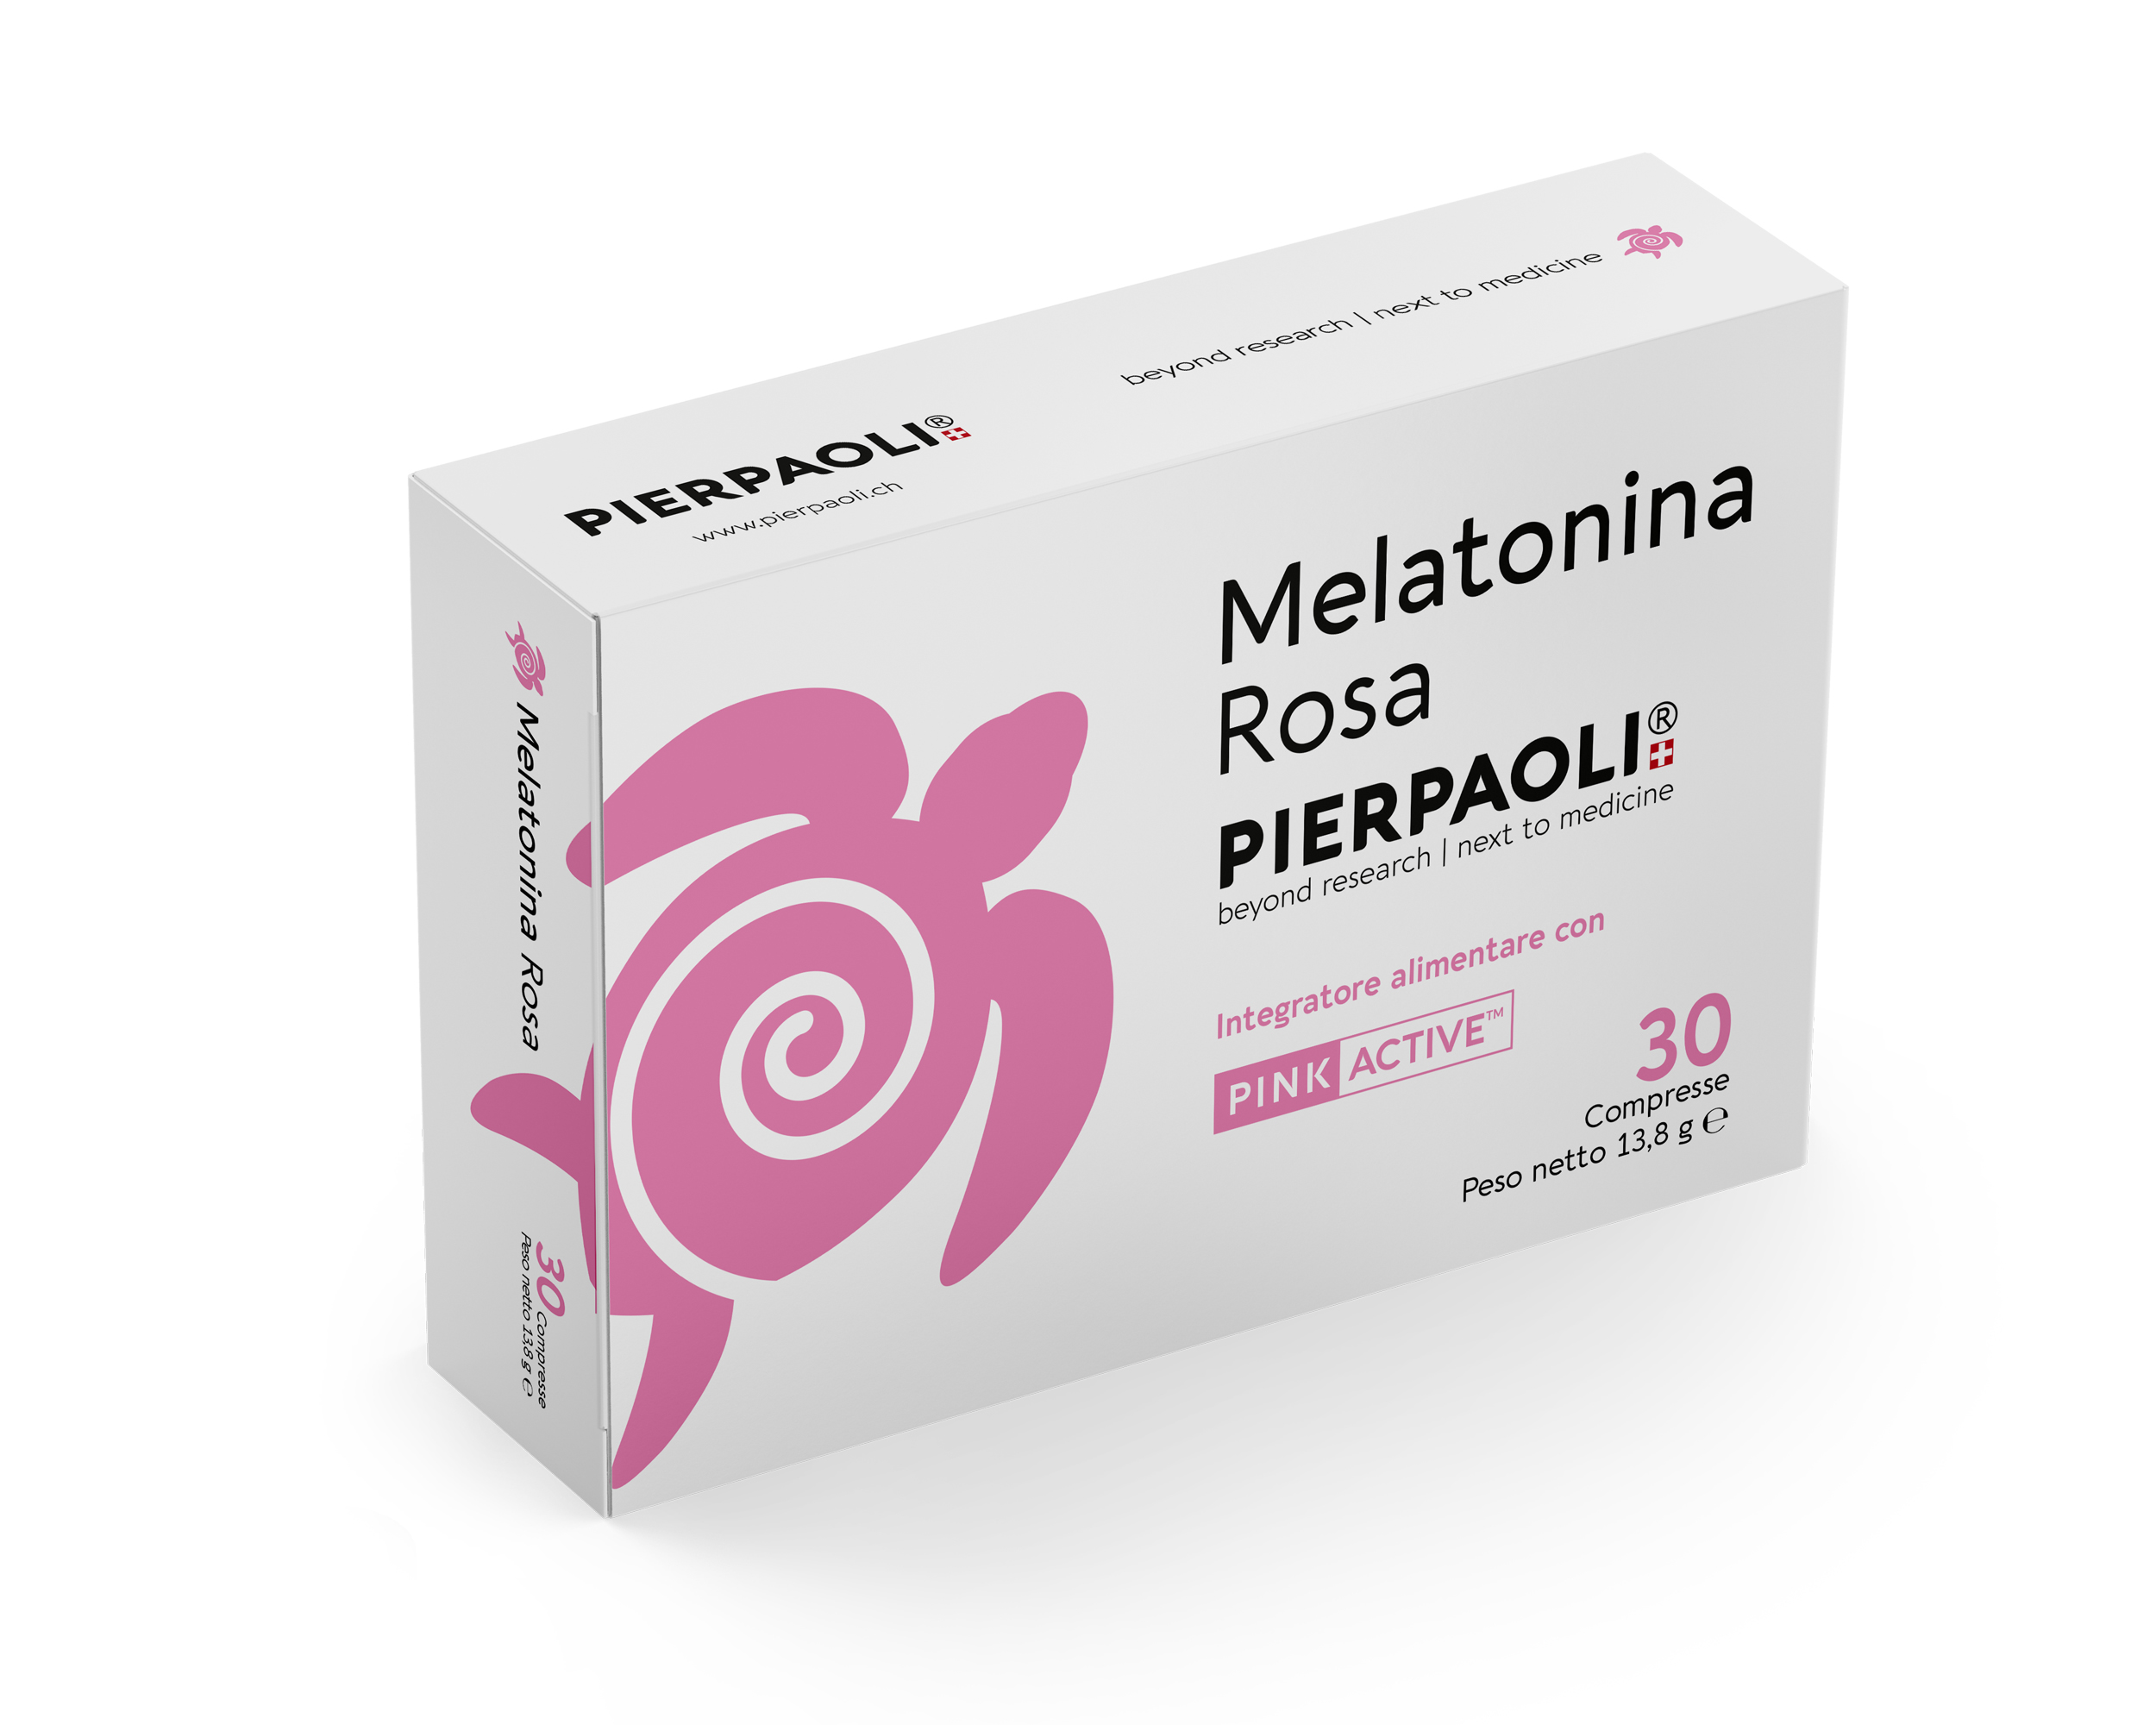 Se puede mezclar diazepam y melatonina